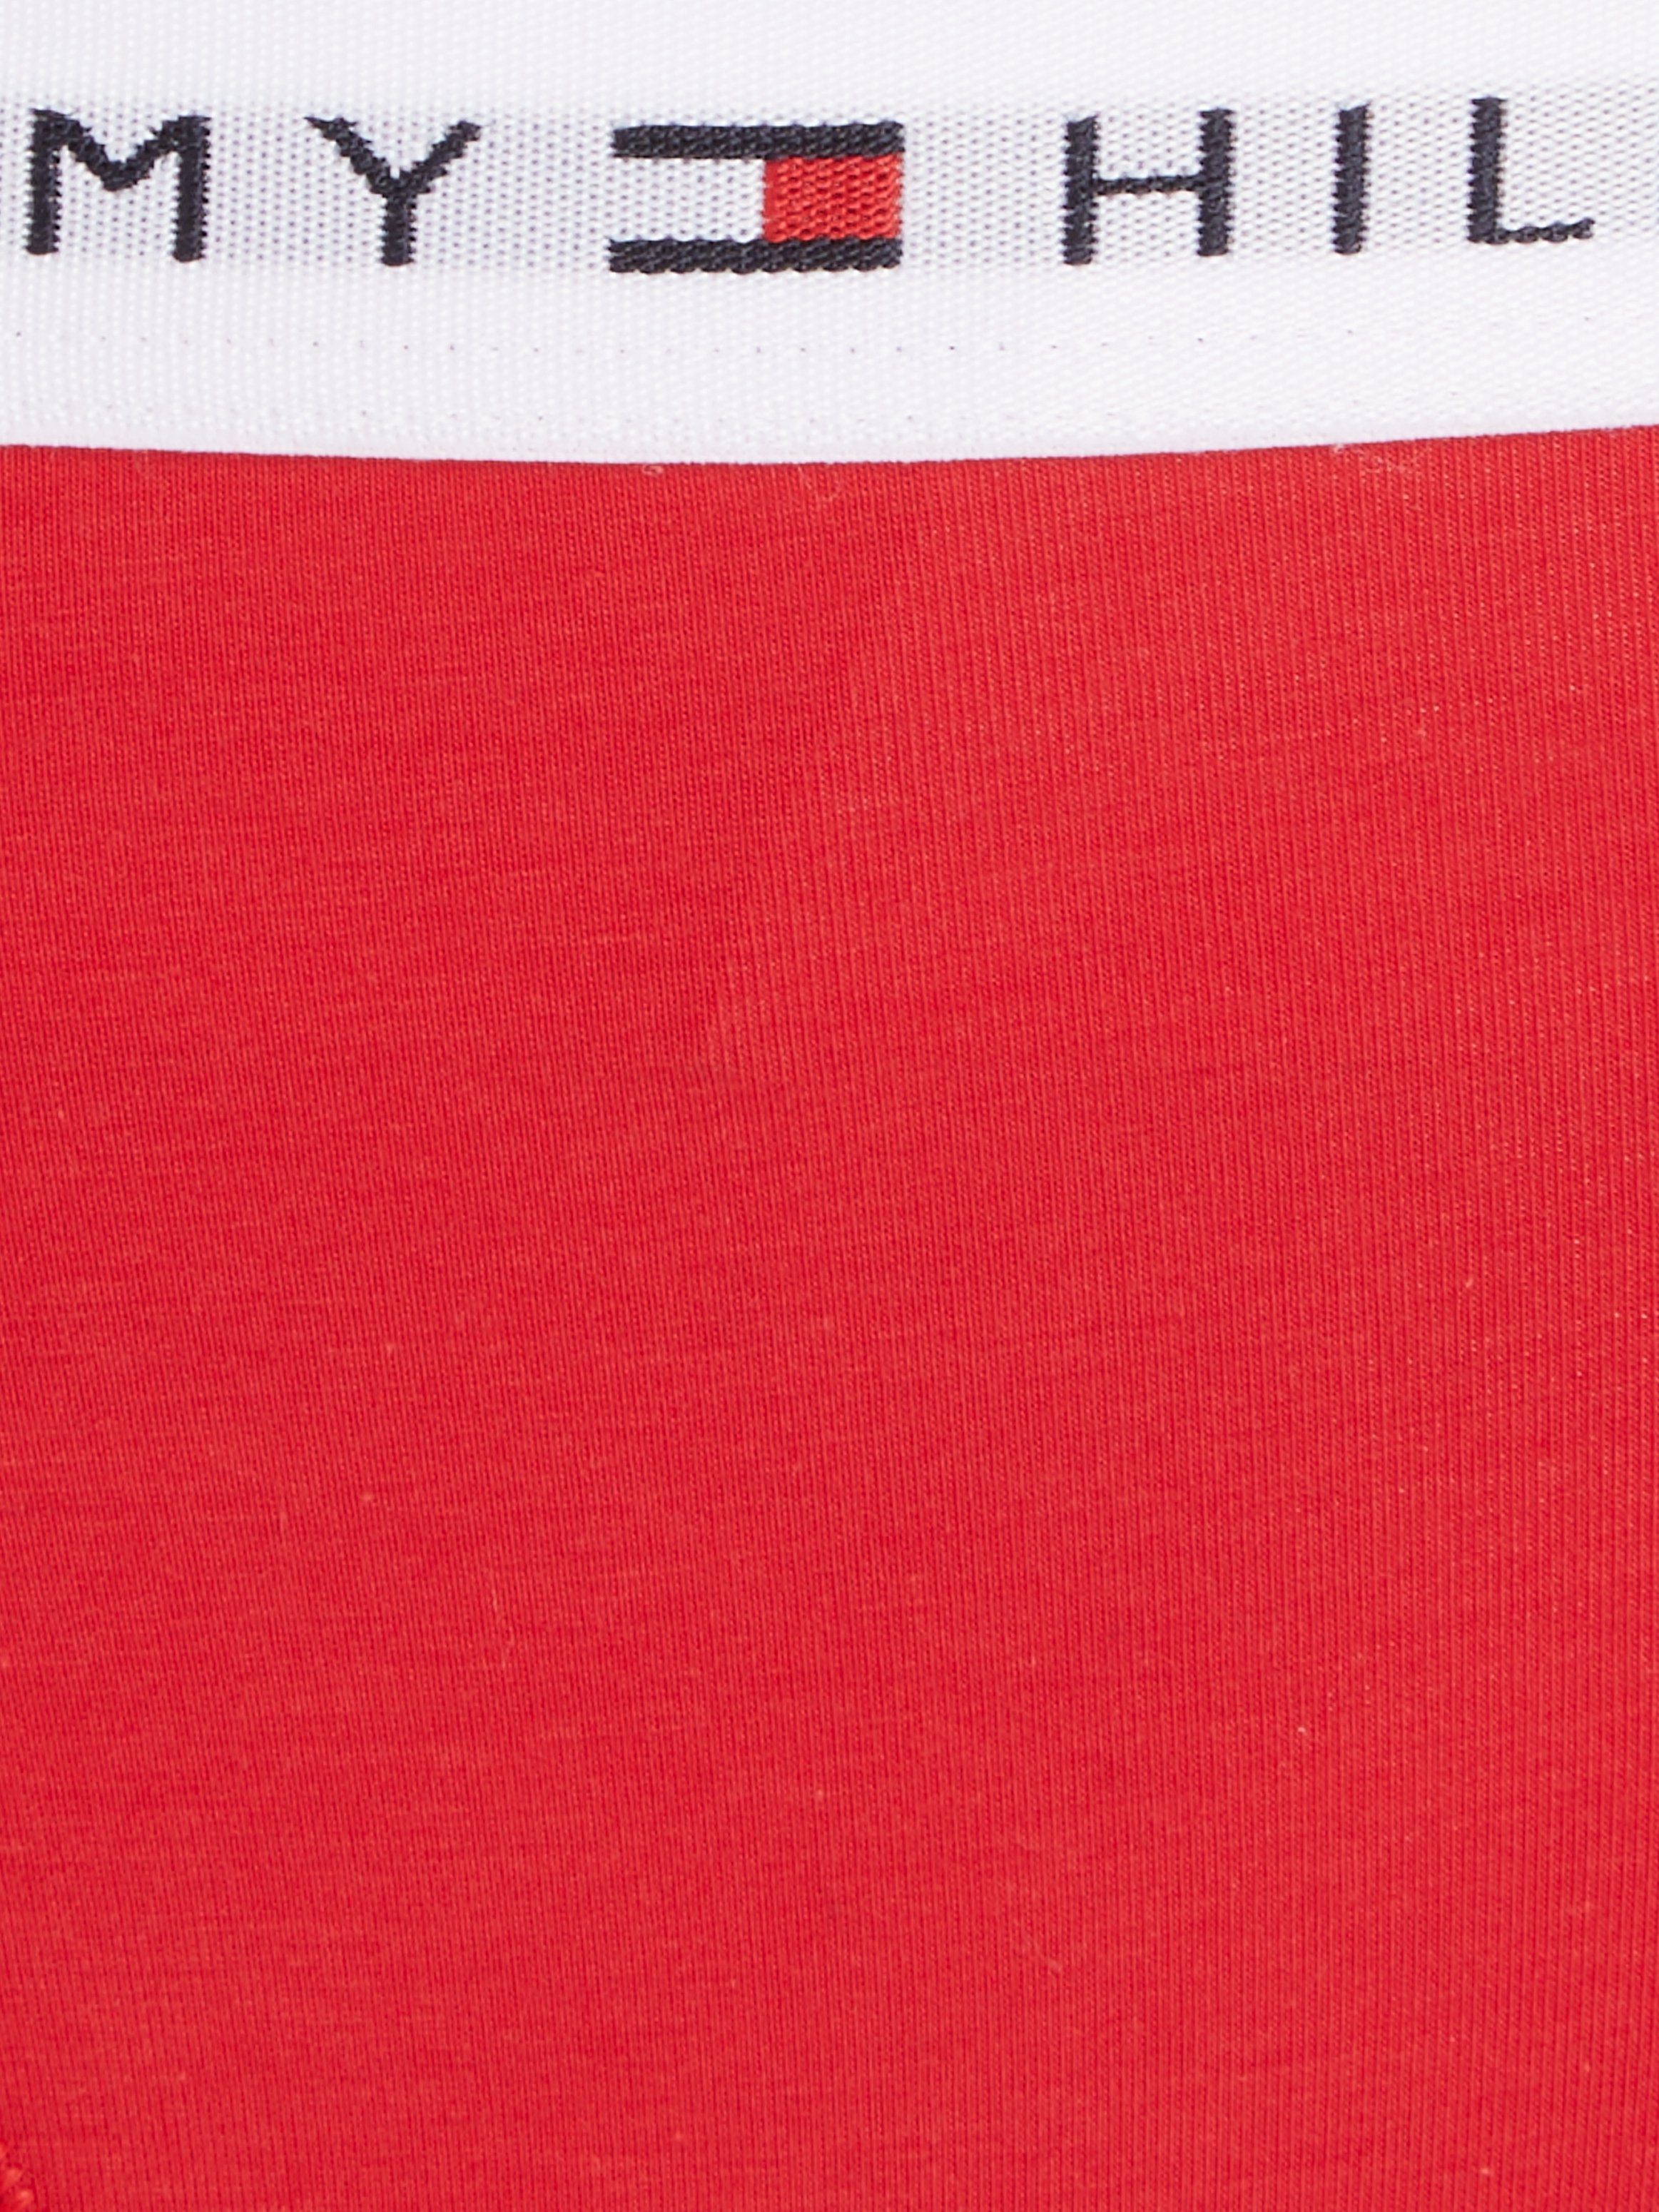 Tommy Hilfiger mit Logo Taillenbund Primary Bikinislip dem Underwear Red auf